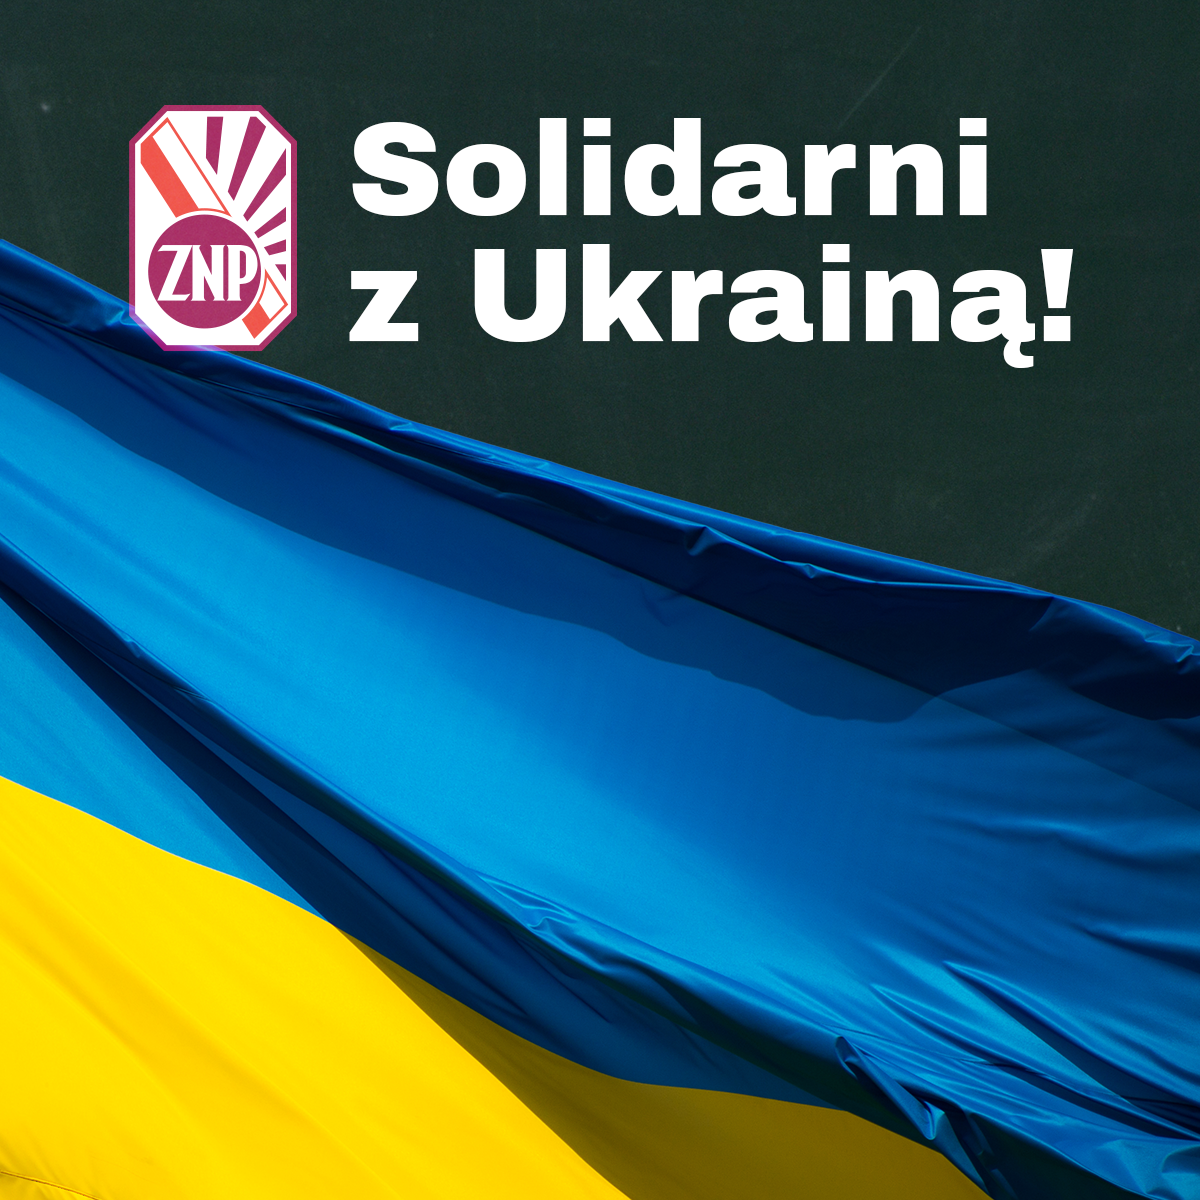 znp_sm_post_solidarniz-z-ukraina2